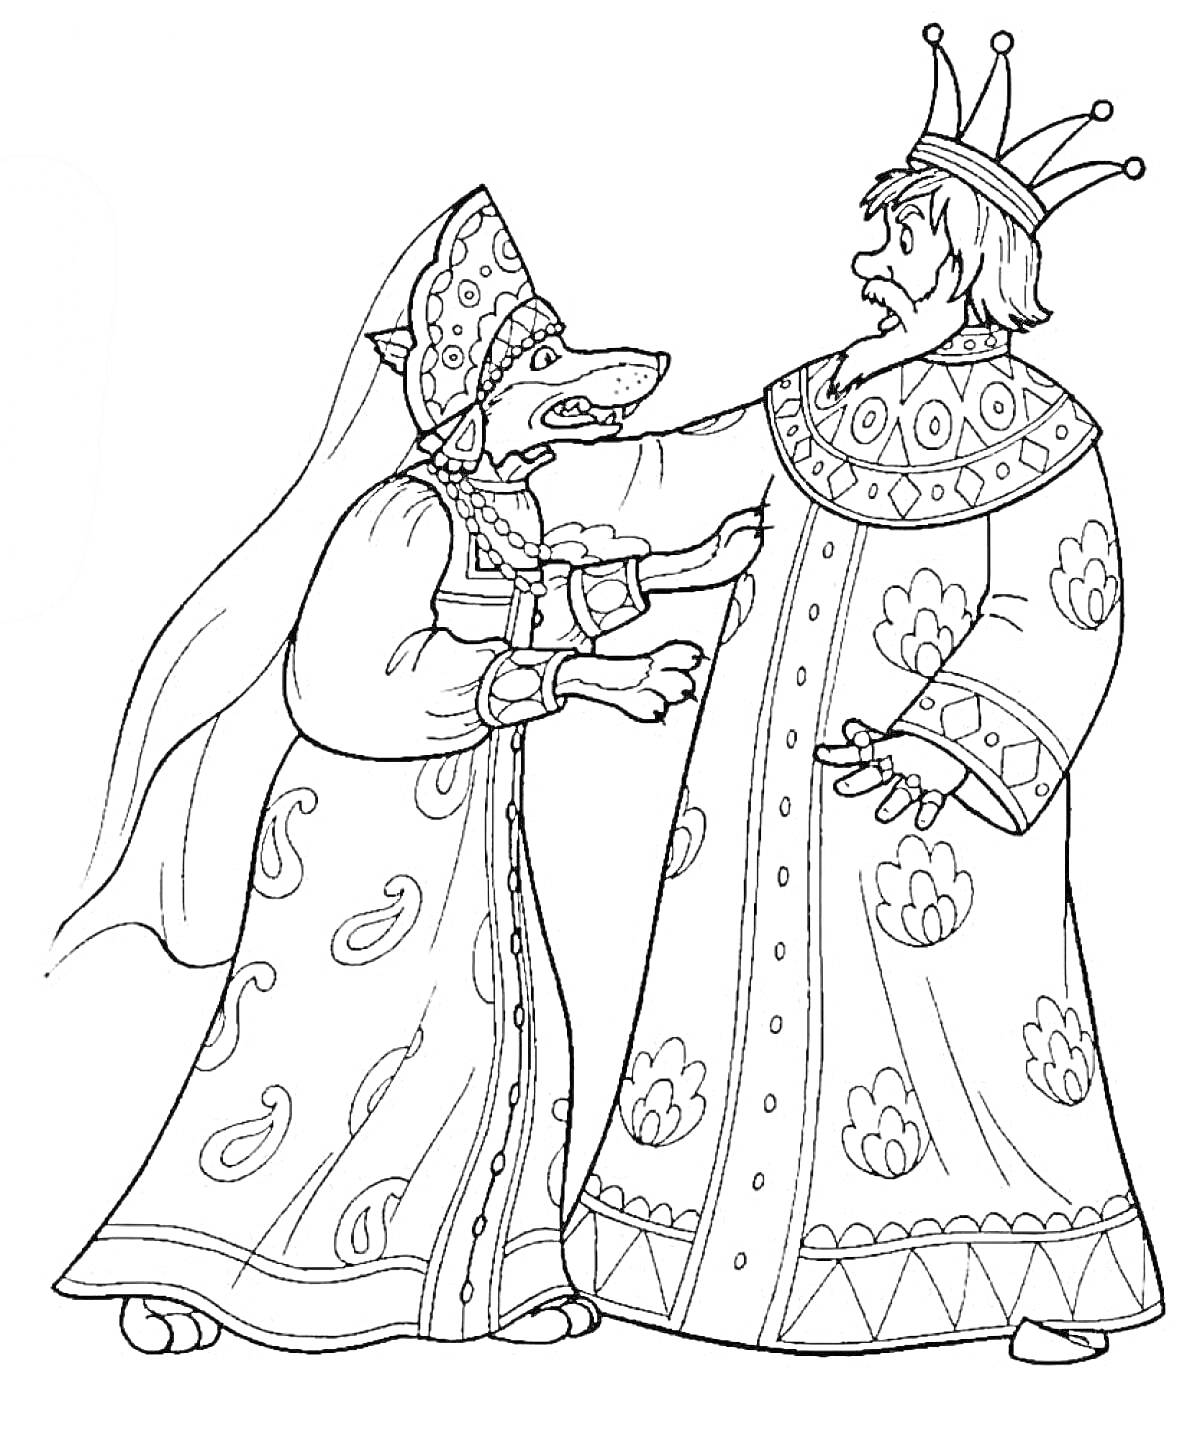 Раскраска Мужчина и женщина в русских народных костюмах. Мужчина носит длинный халат и корону, женщина в кокошнике и платье с узорами.